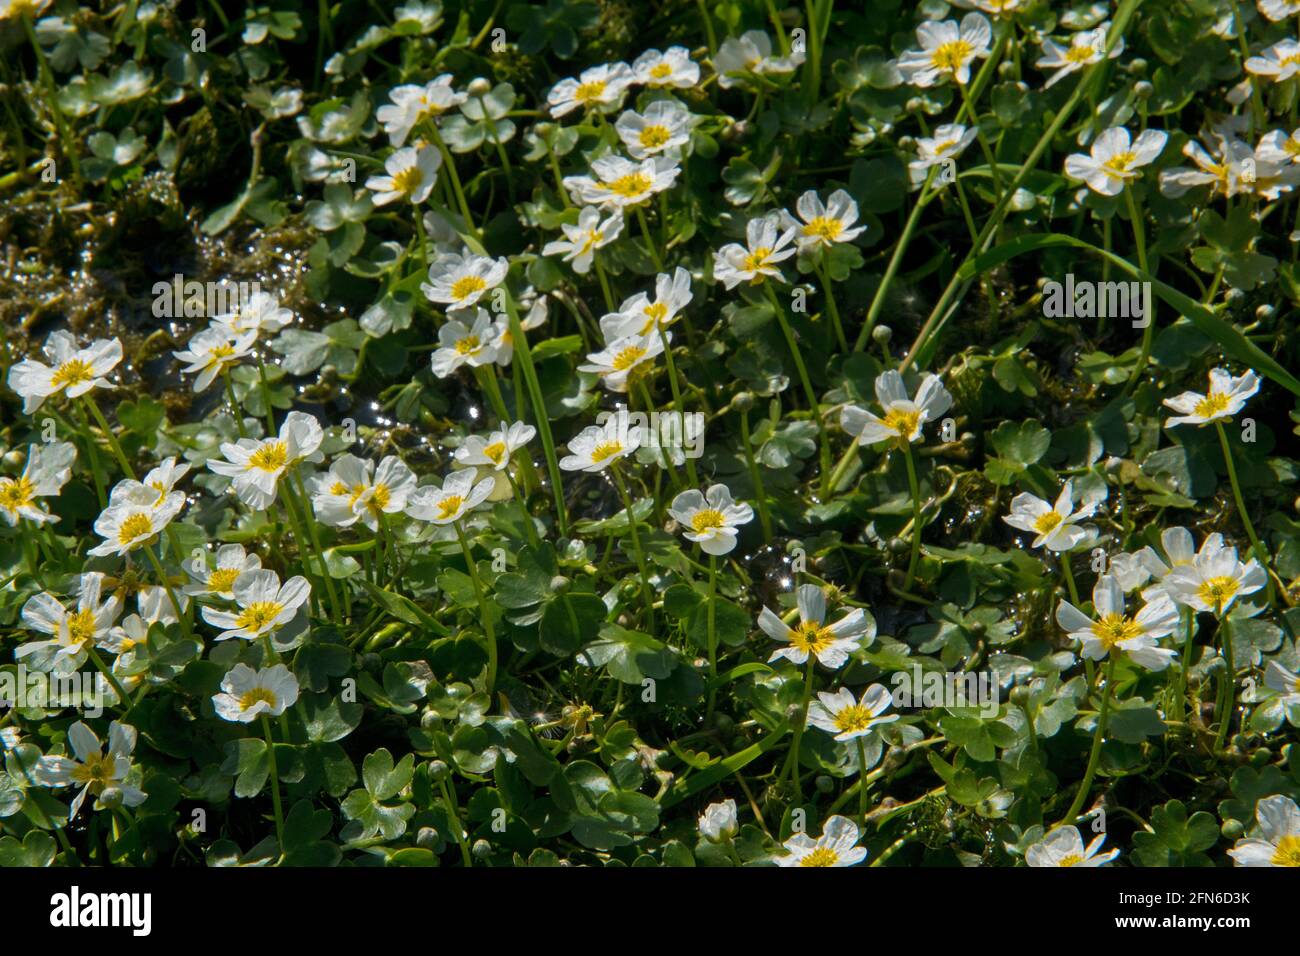 Un sacco di fiori bianchi petali con centri gialli di comune acqua-crowfoot in acqua Foto Stock